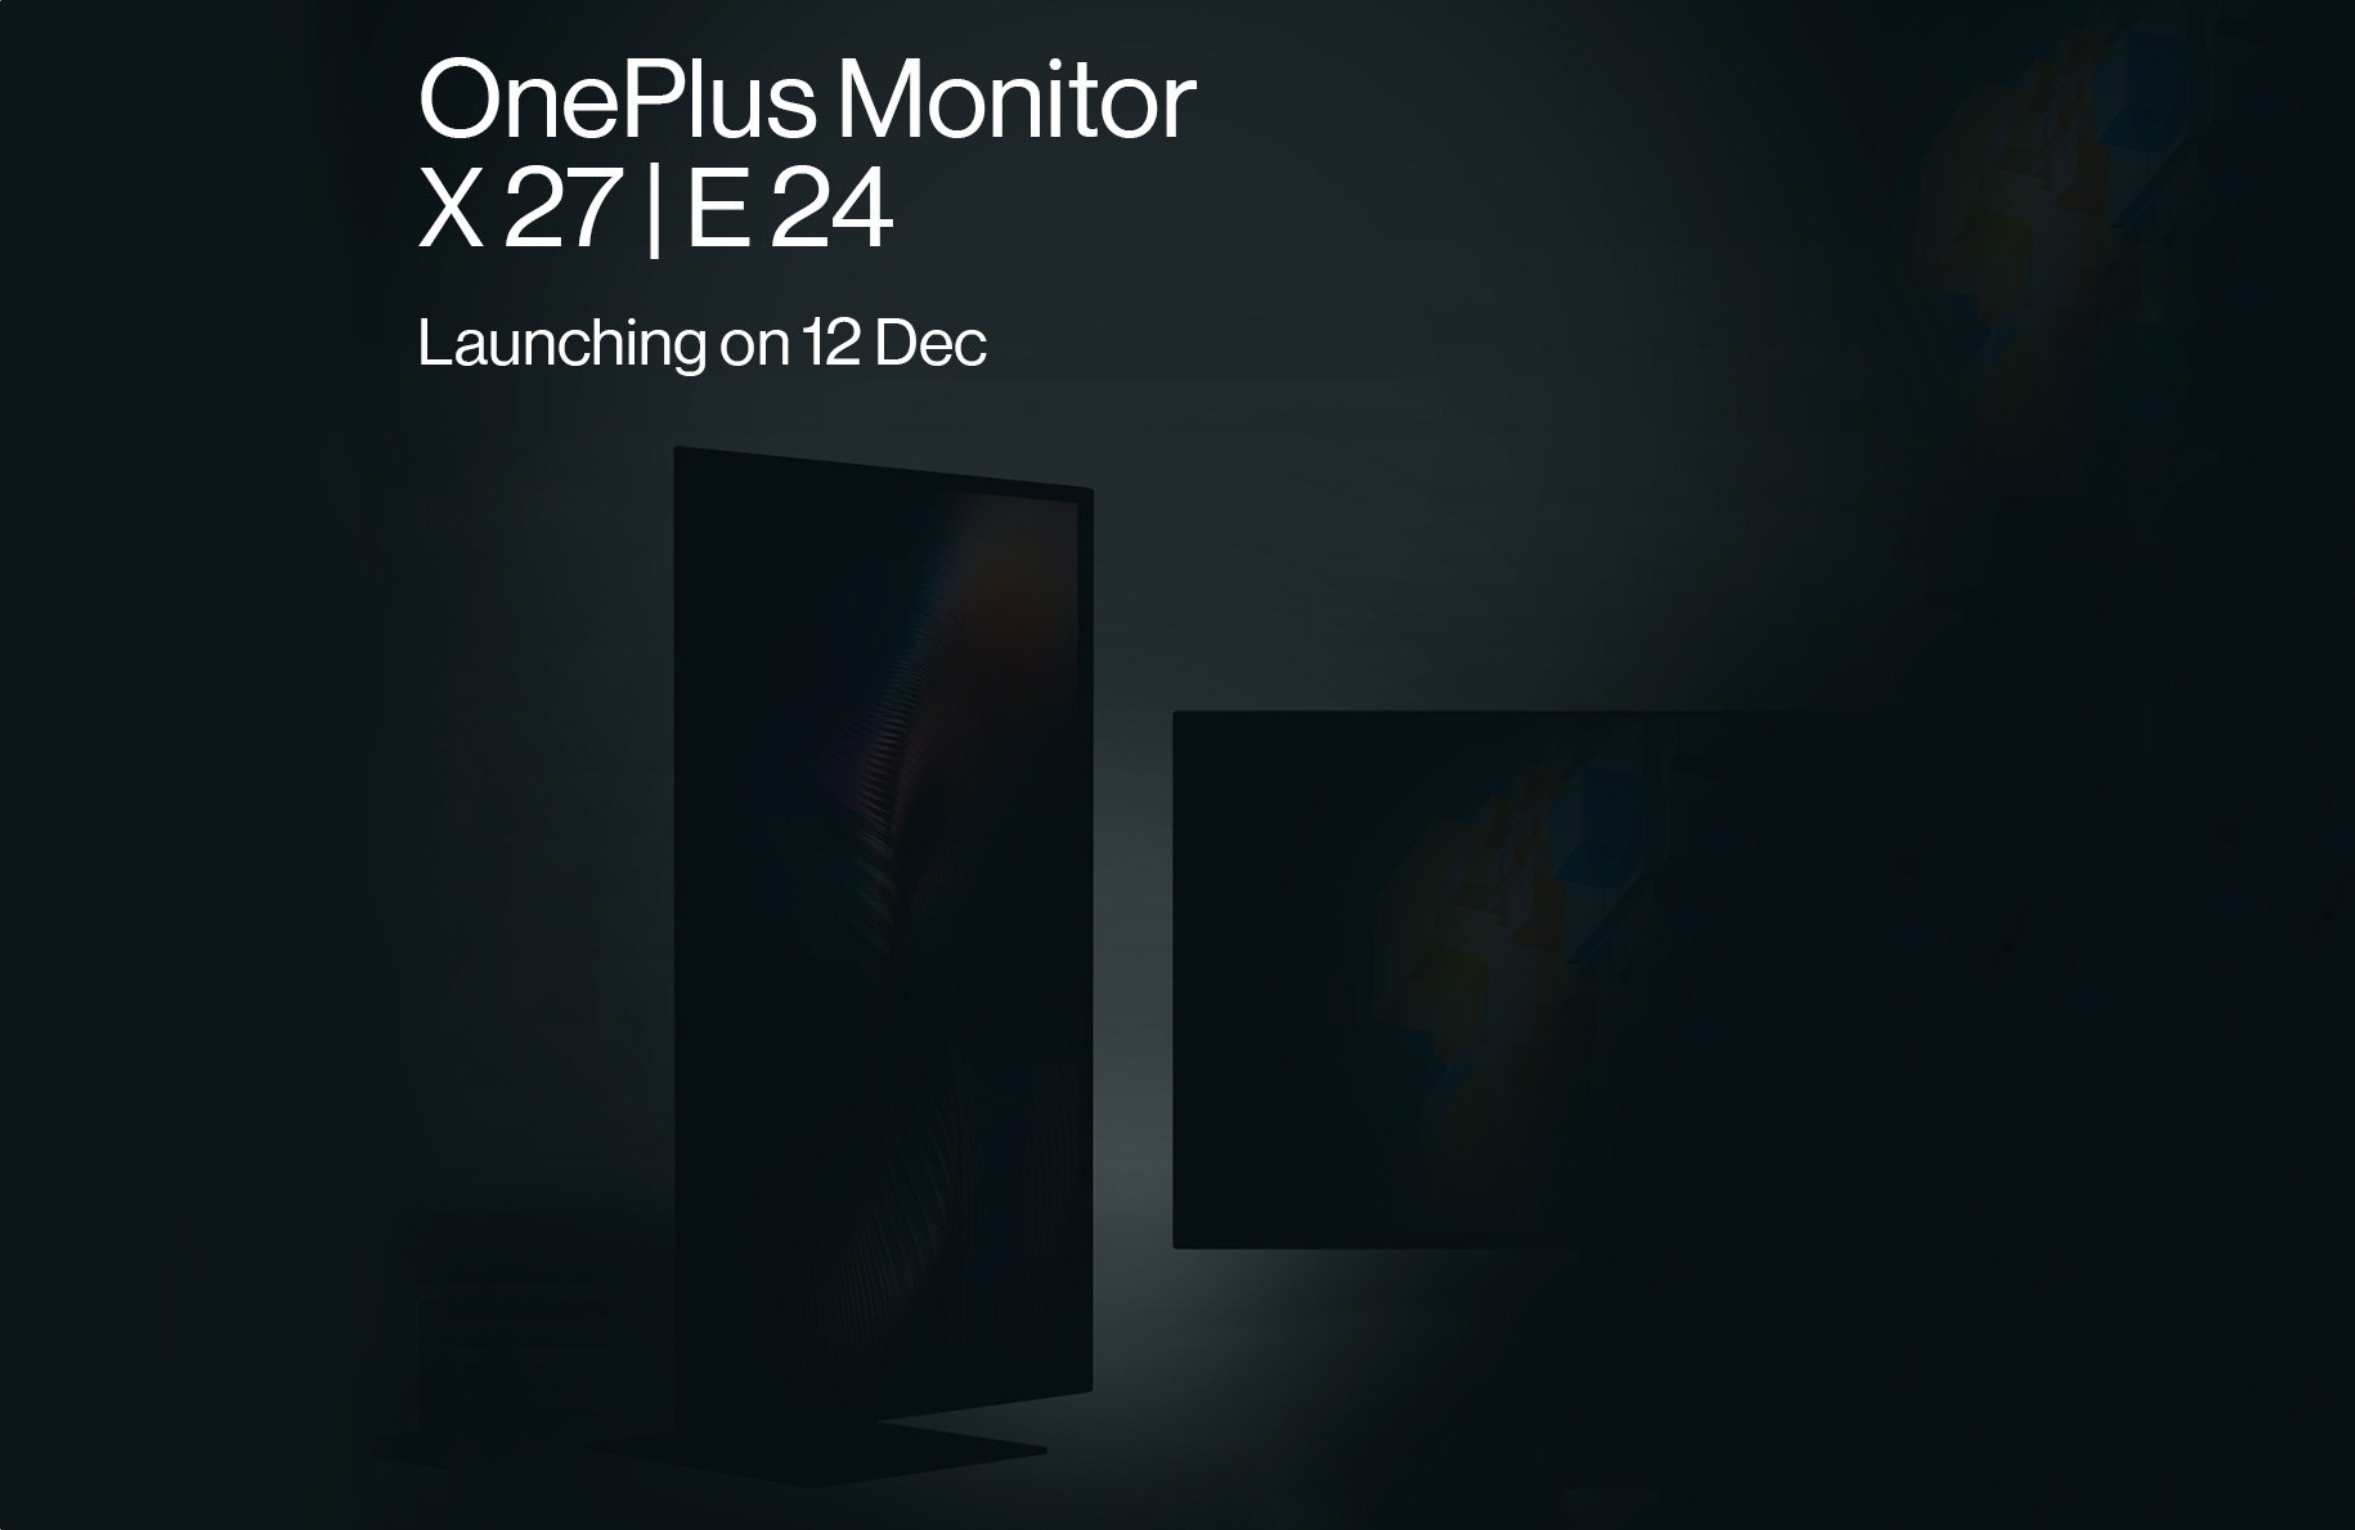 ¡Inesperadamente! OnePlus presentará los monitores X27 y E24 el 12 de diciembre